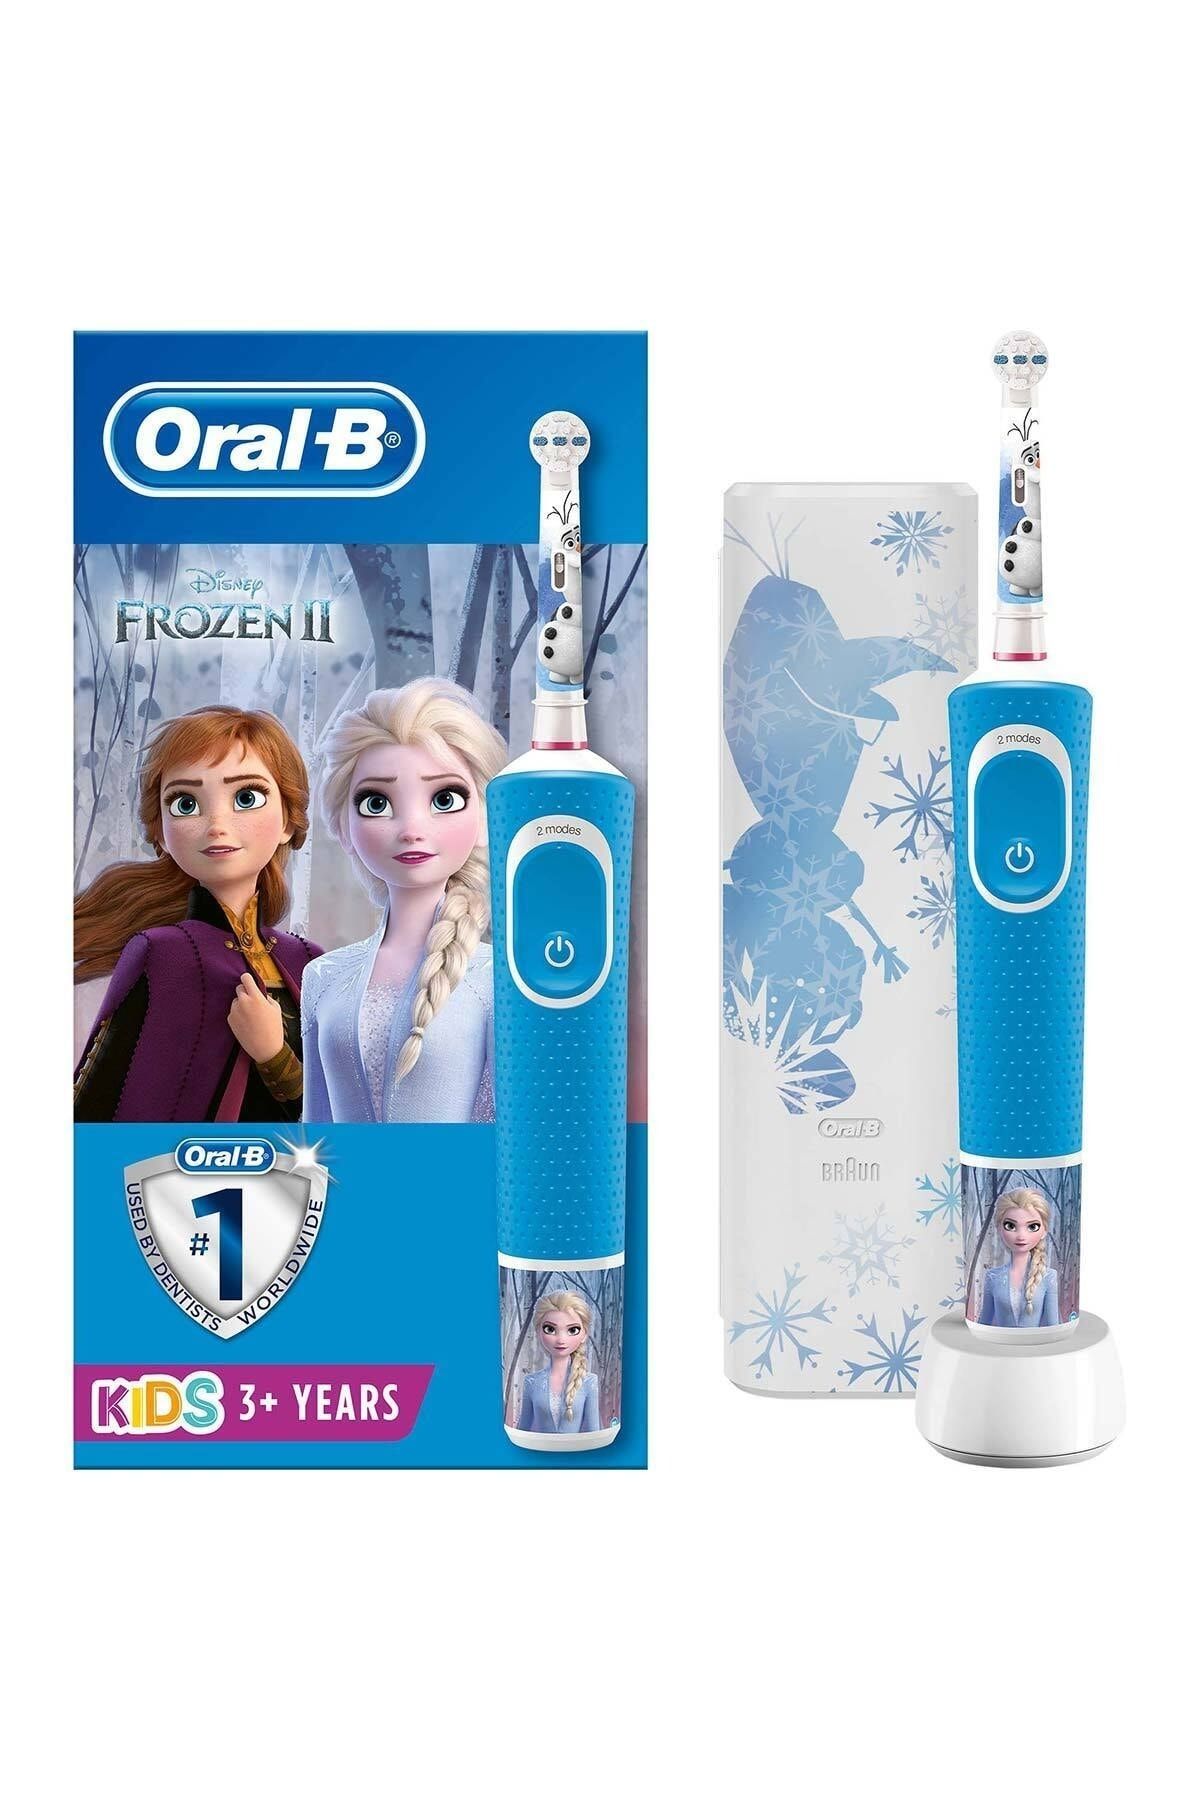 Oral-B Çocuklar Için Şarj Edilebilir Diş Fırçası D100 Frozen Özel Seri - Taşıma Kutusu